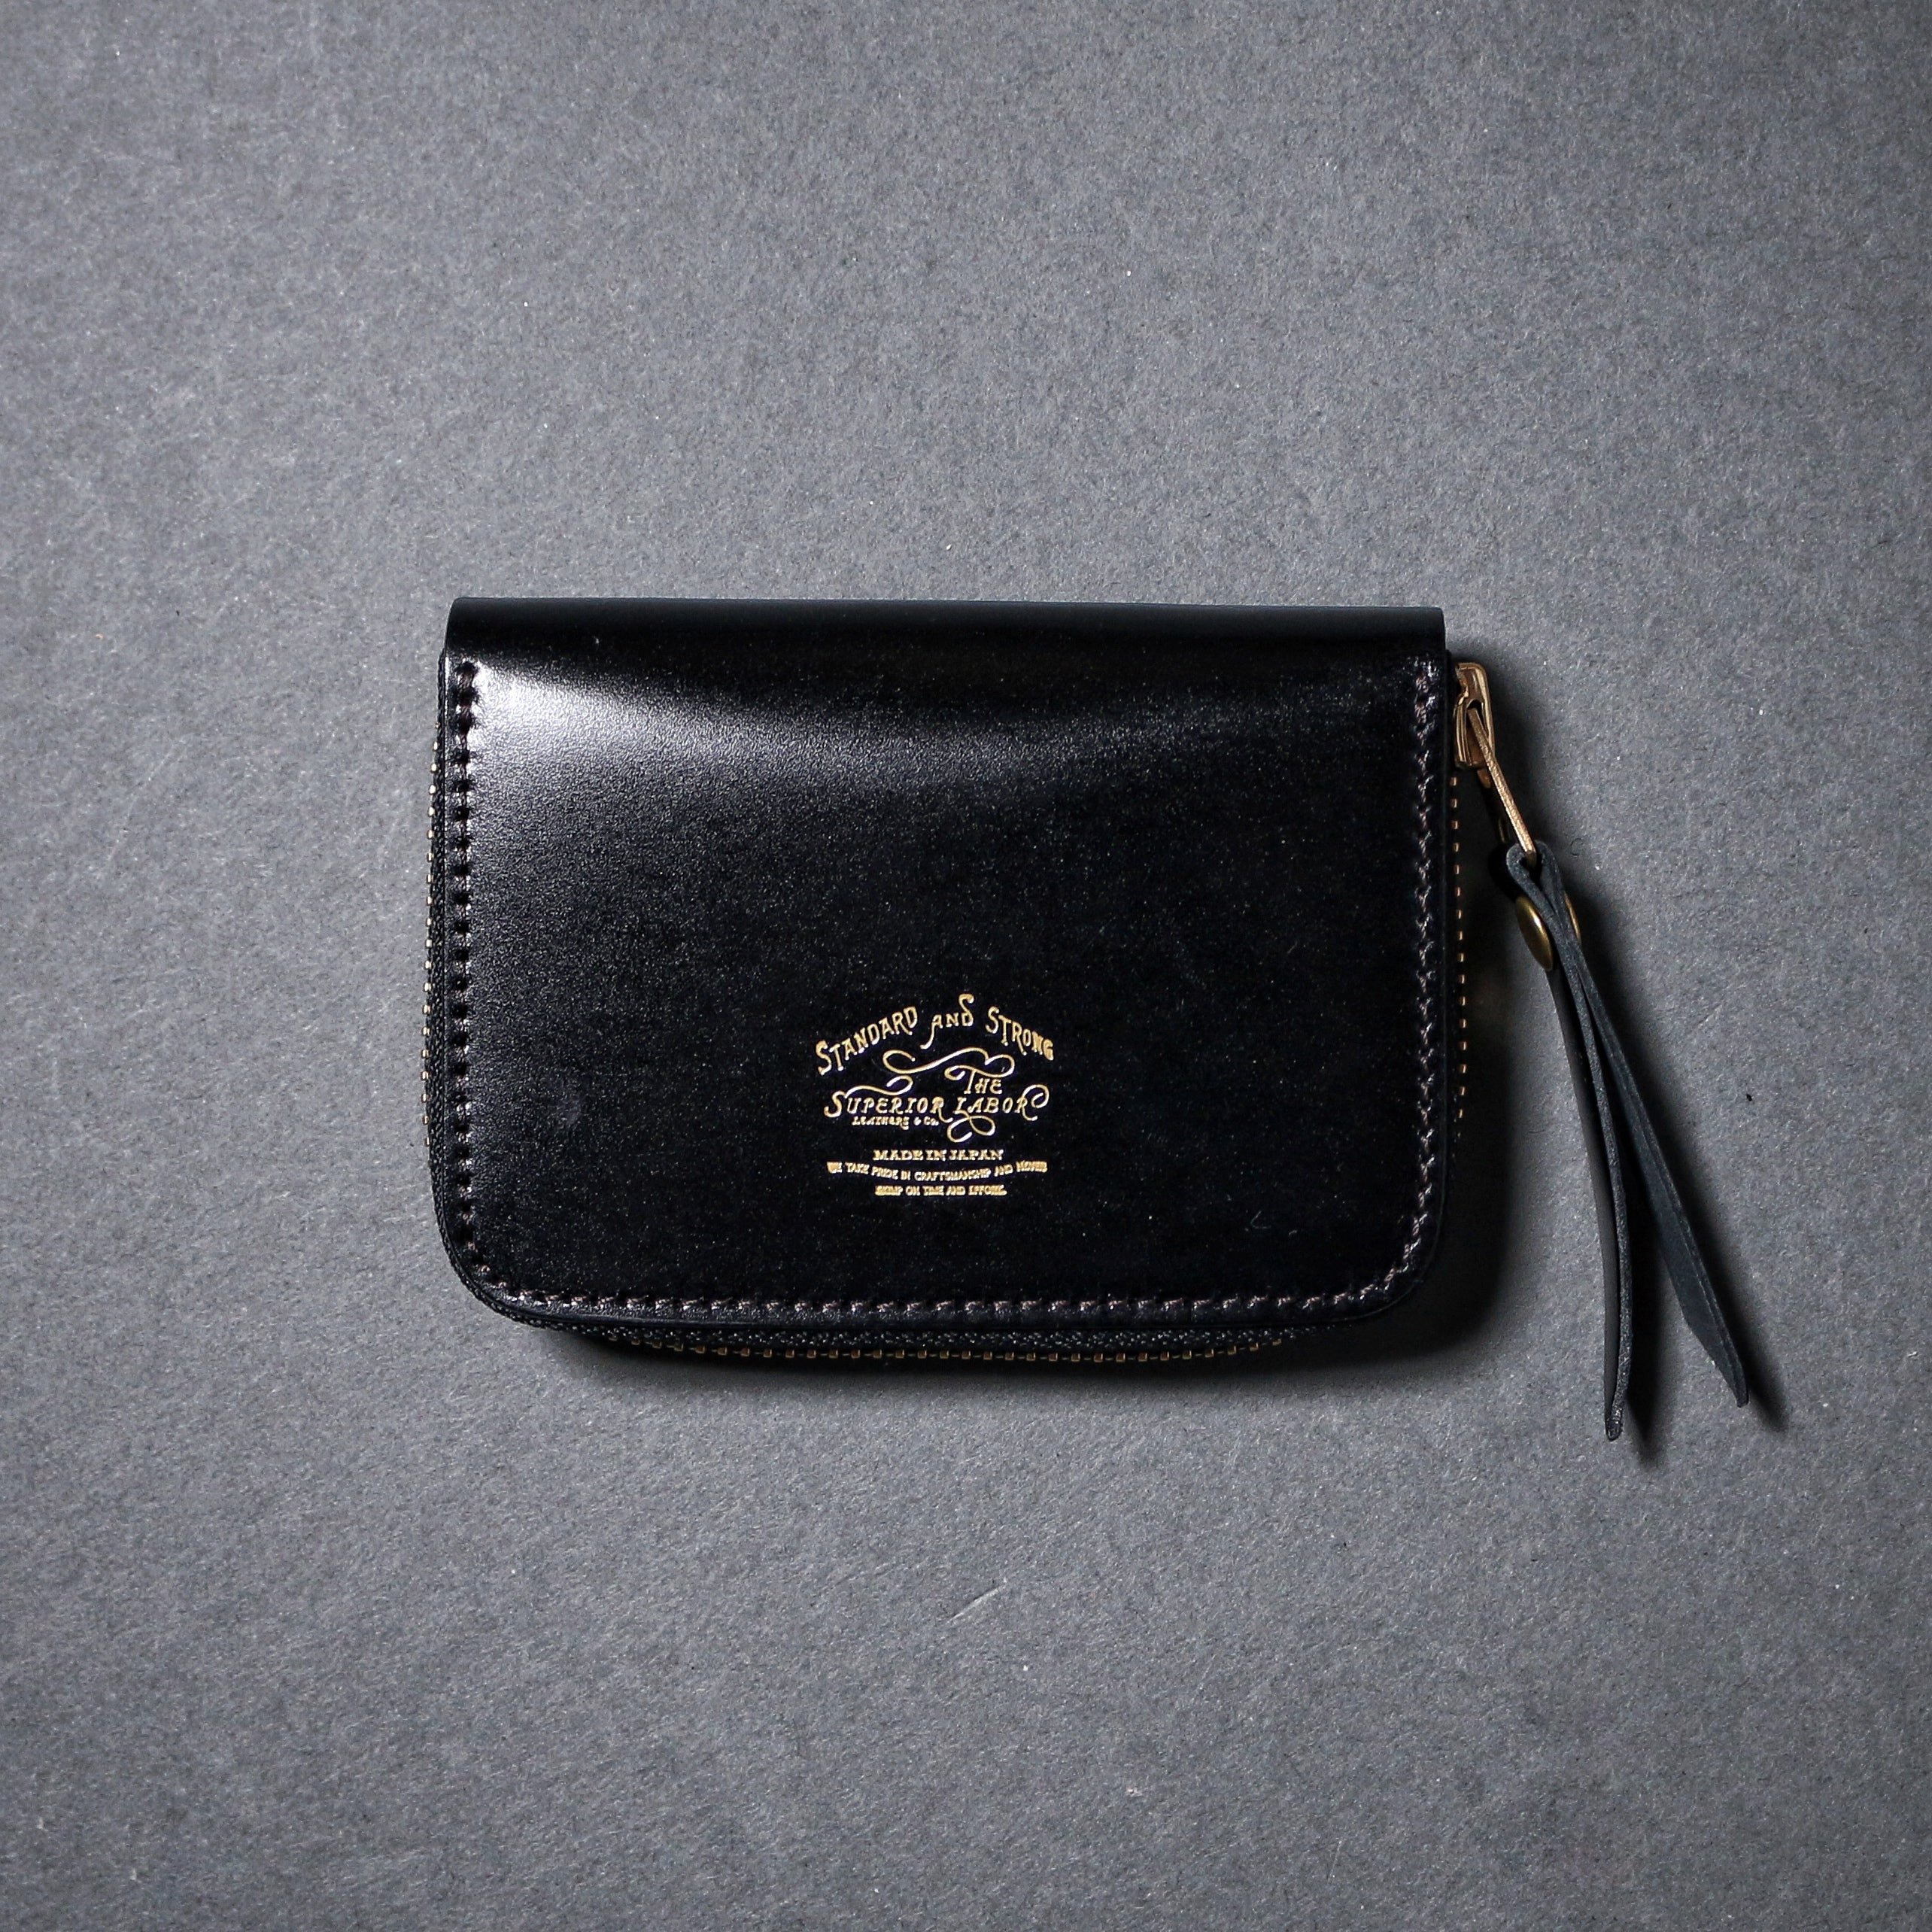 SL0193 cordovan zip small wallet